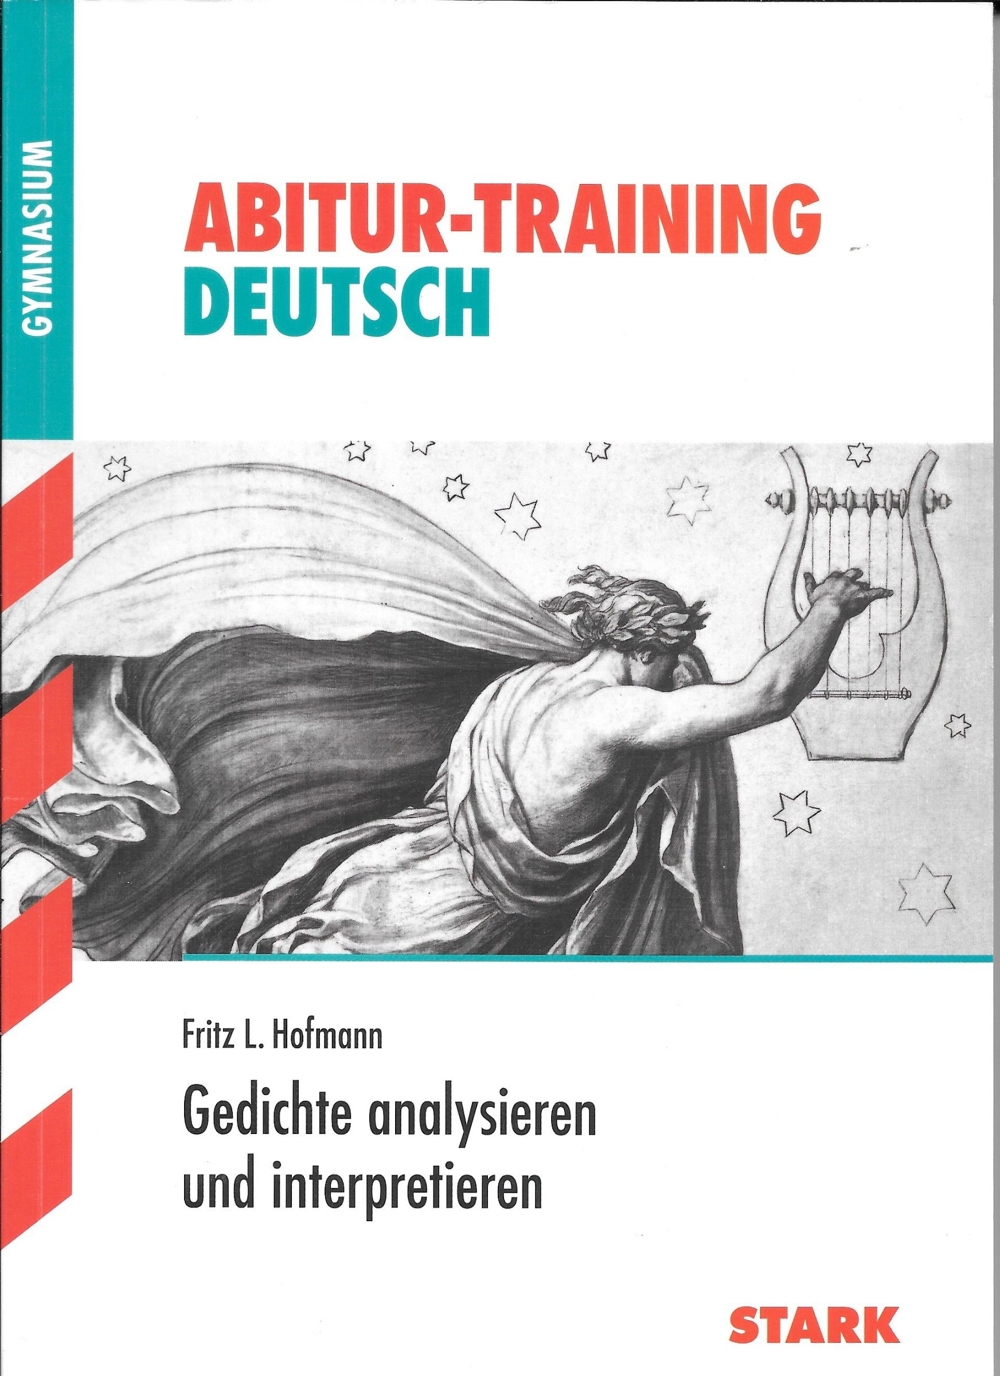 Abi-Training Deutsch - Gedichtanalyse